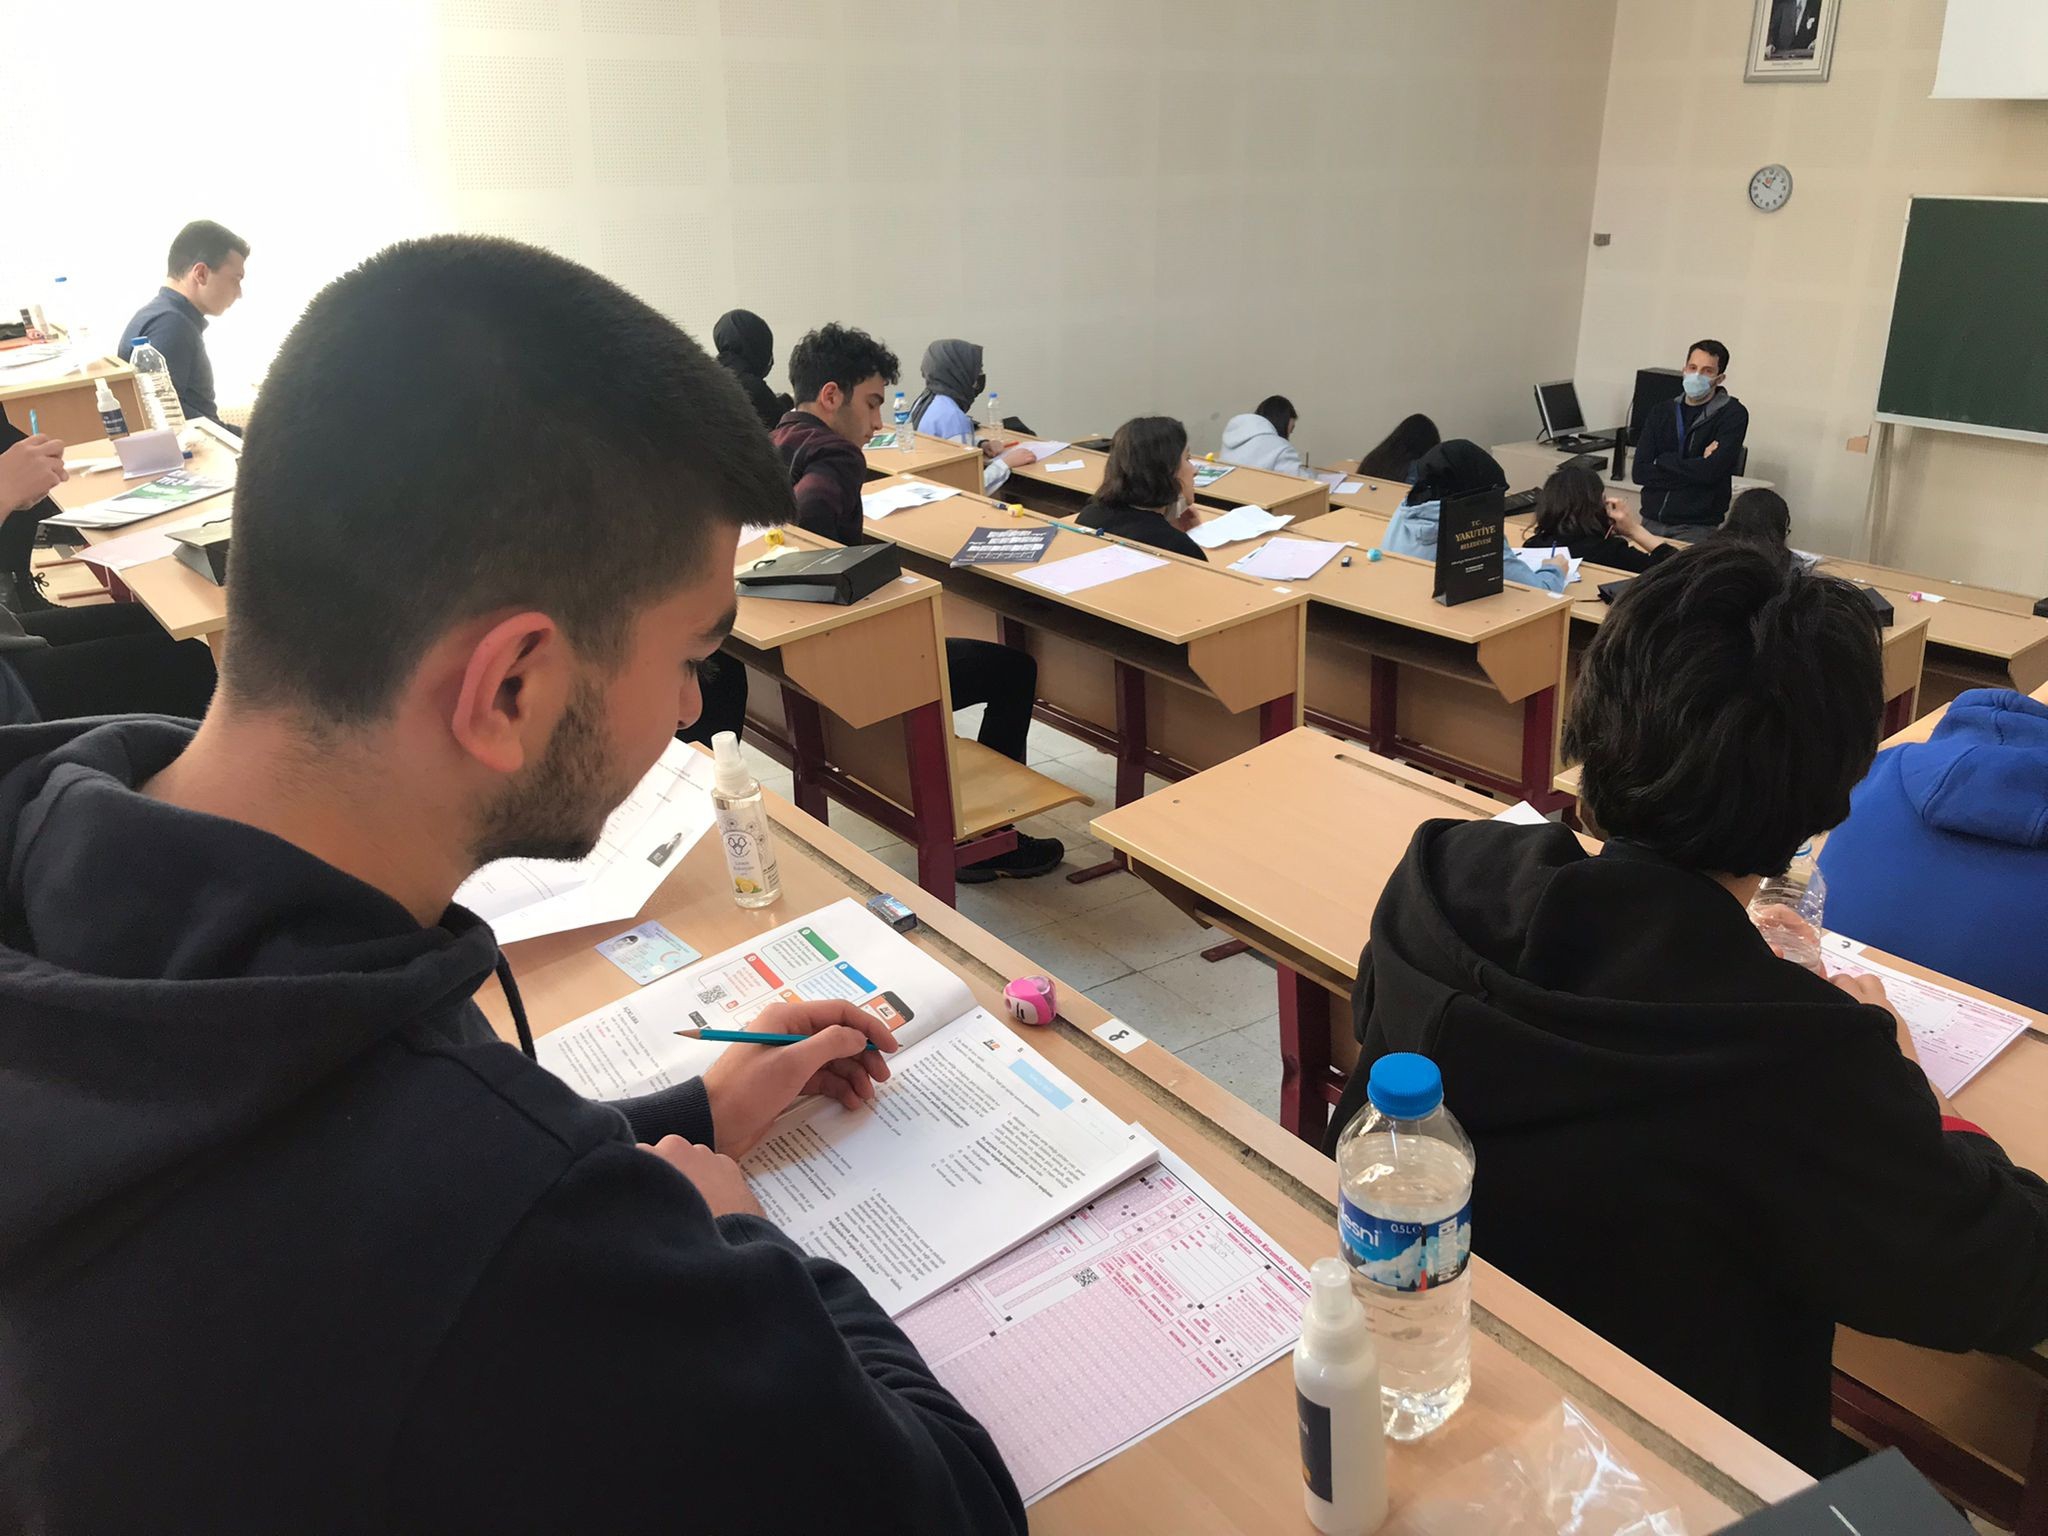 Prof. Dr. Necmeddin Erbakan Fen Lisesi öğrencilerine ÖSYM standartlarında deneme sınavı